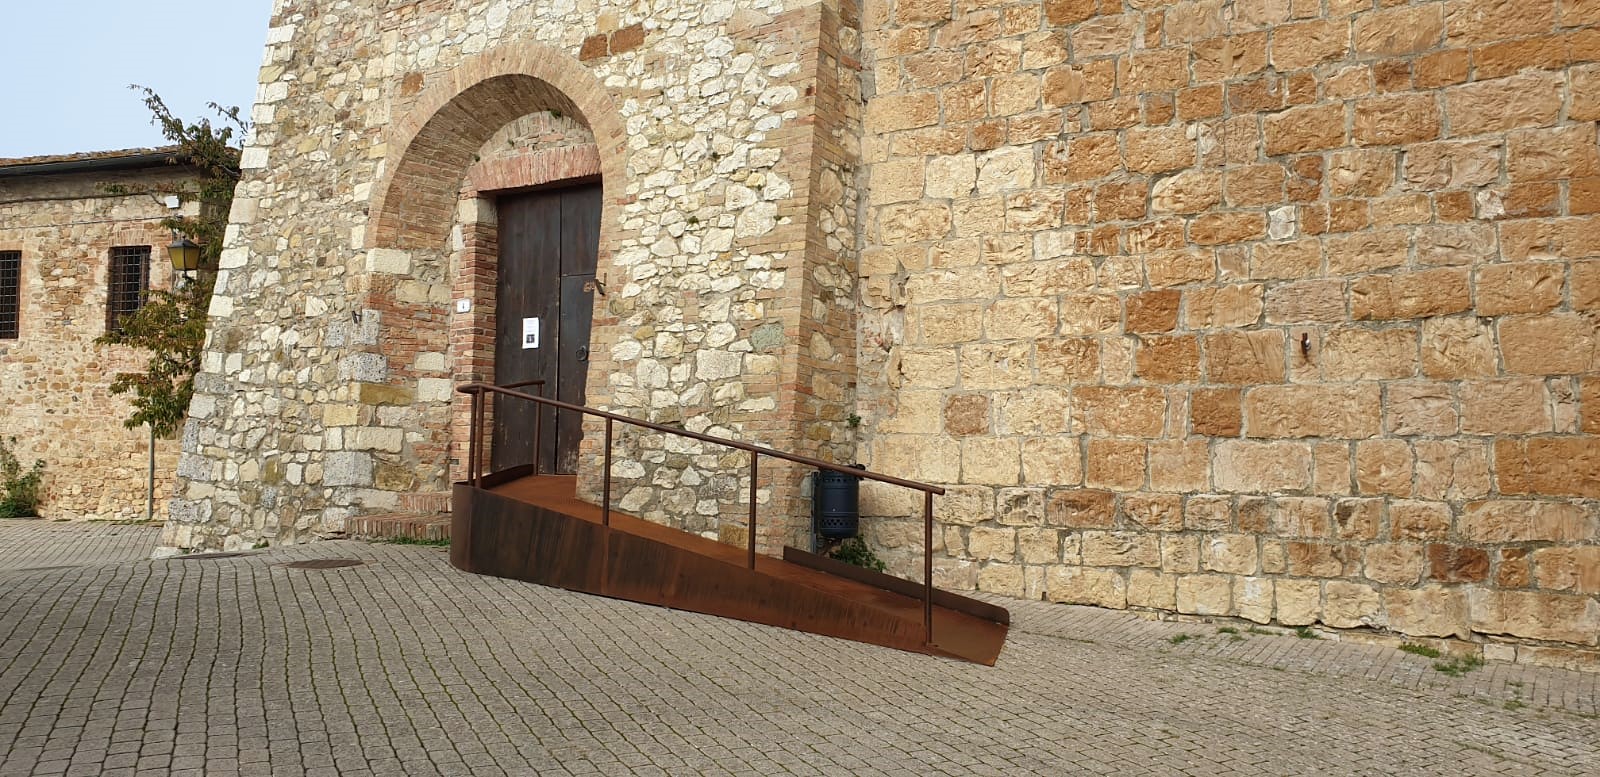 Museo di Murlo - La nuova pedana accessibile all'ingresso